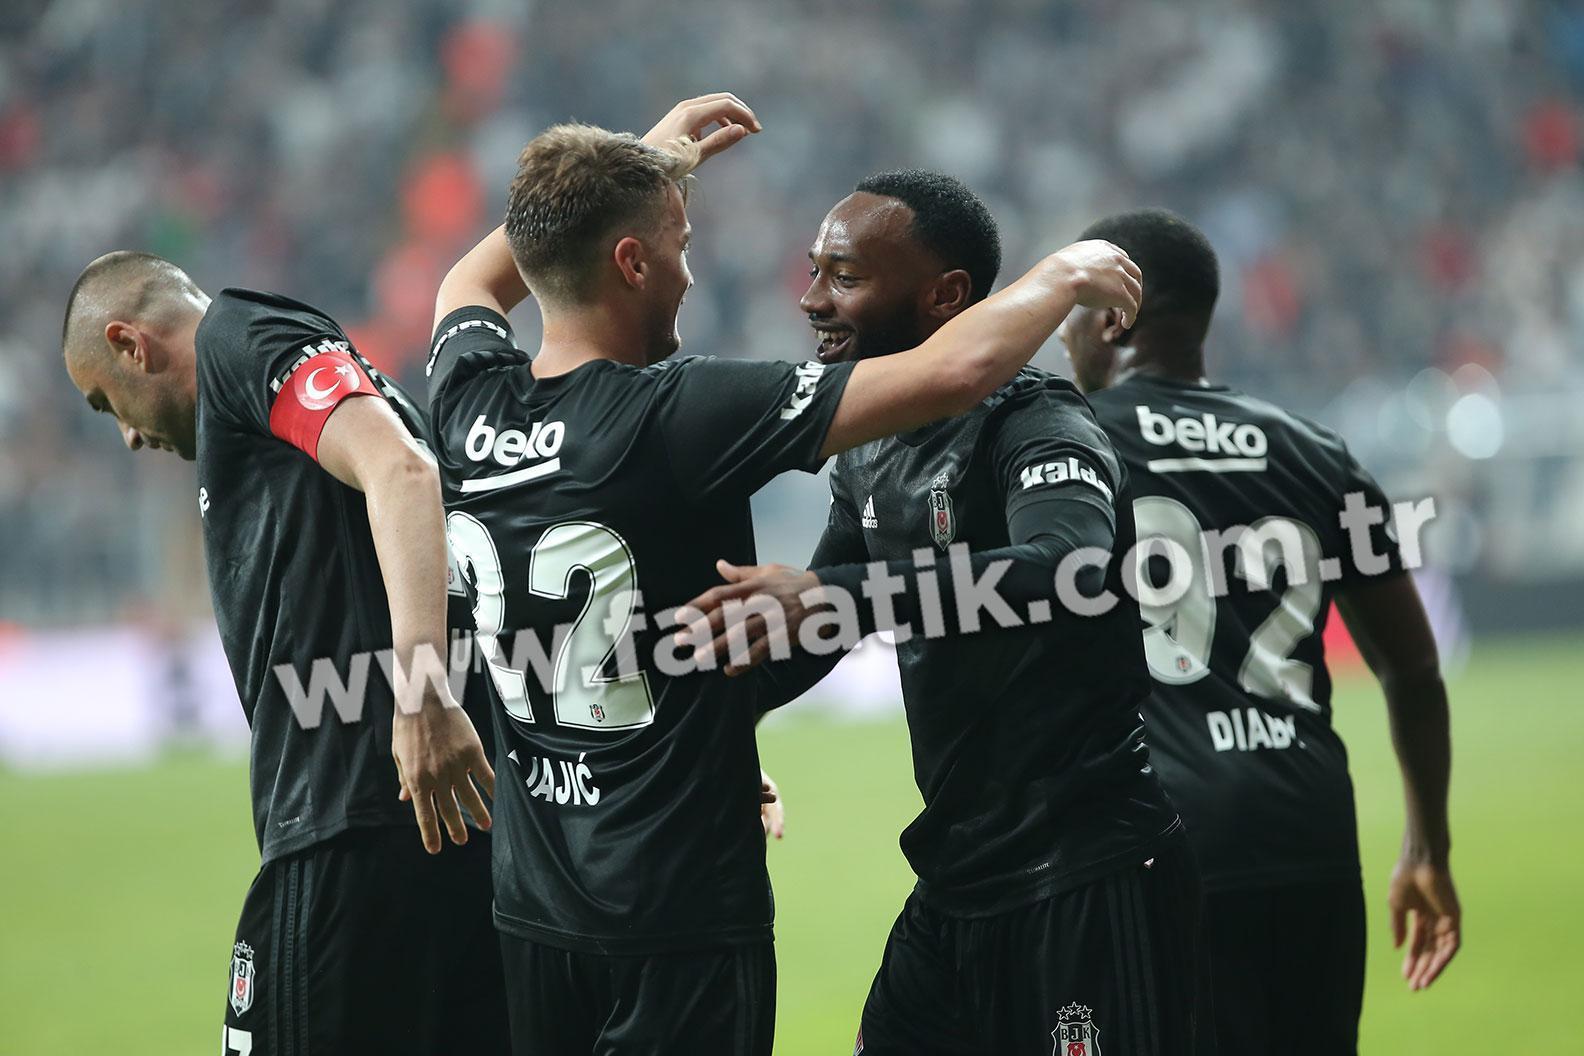 (ÖZET) Beşiktaş - Denizlispor maç sonucu: 1-0 (BJK - Denizli özet izle)